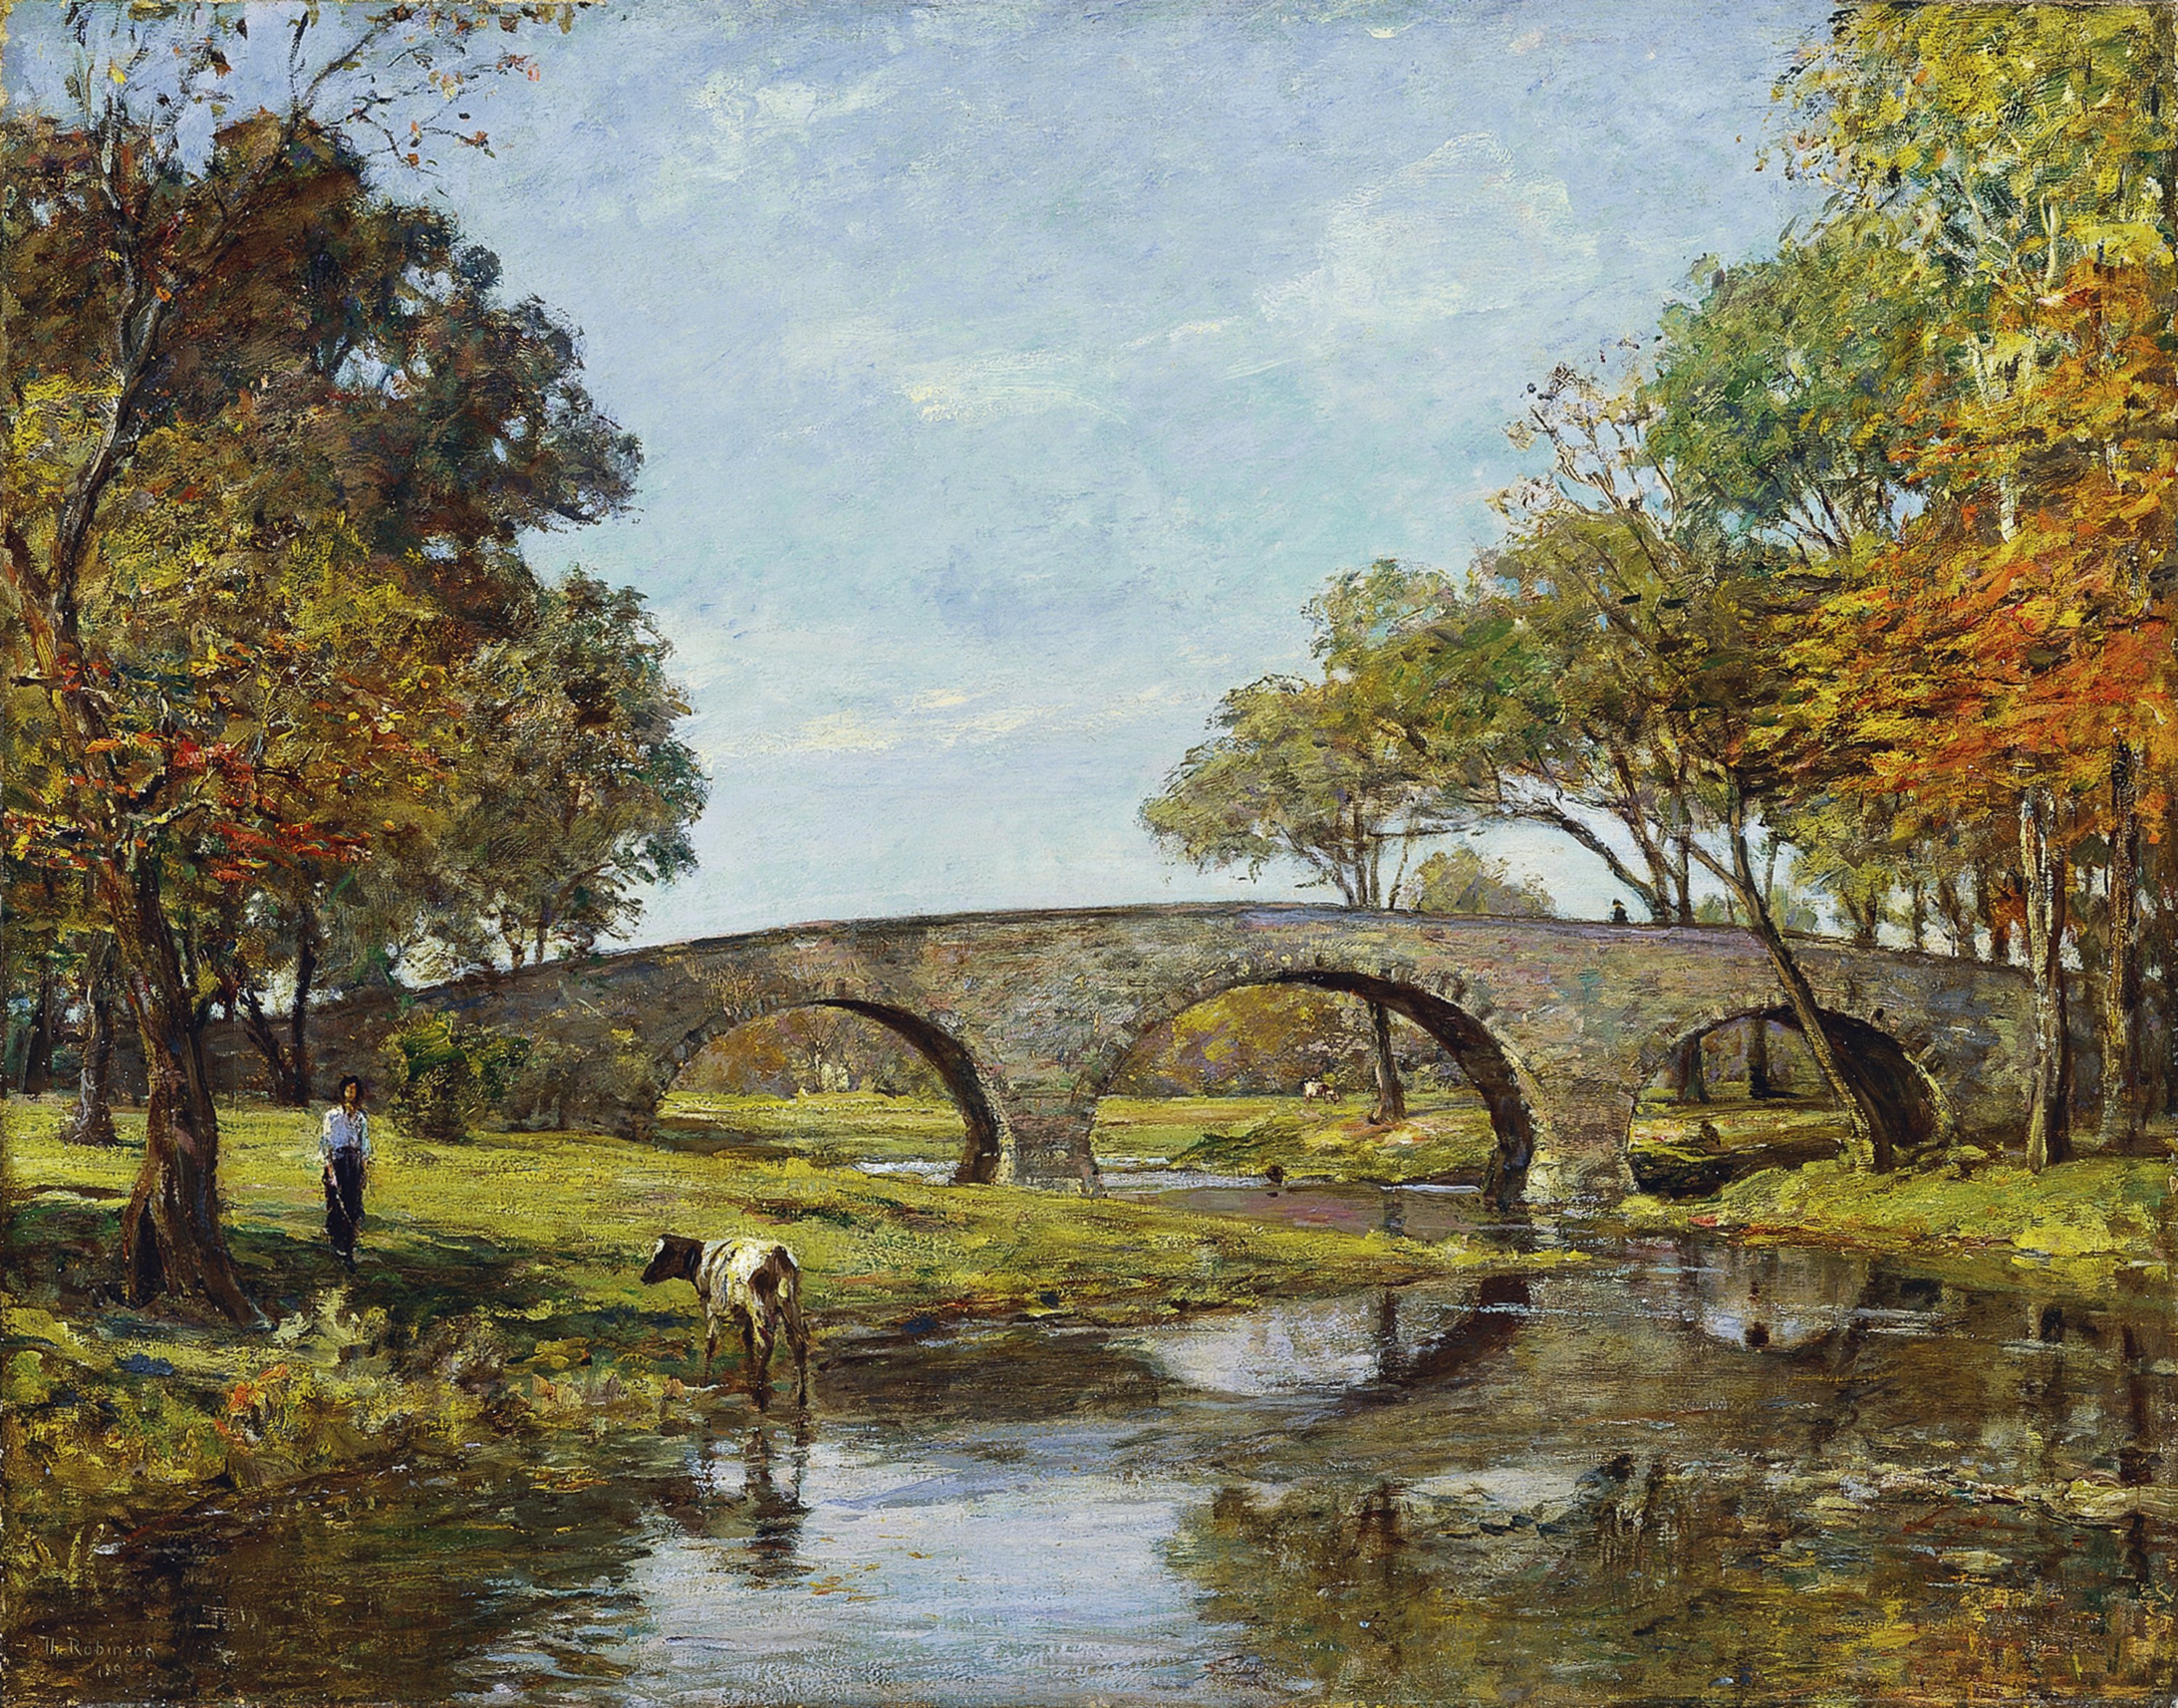 The Old Bridge. El viejo puente, 1890